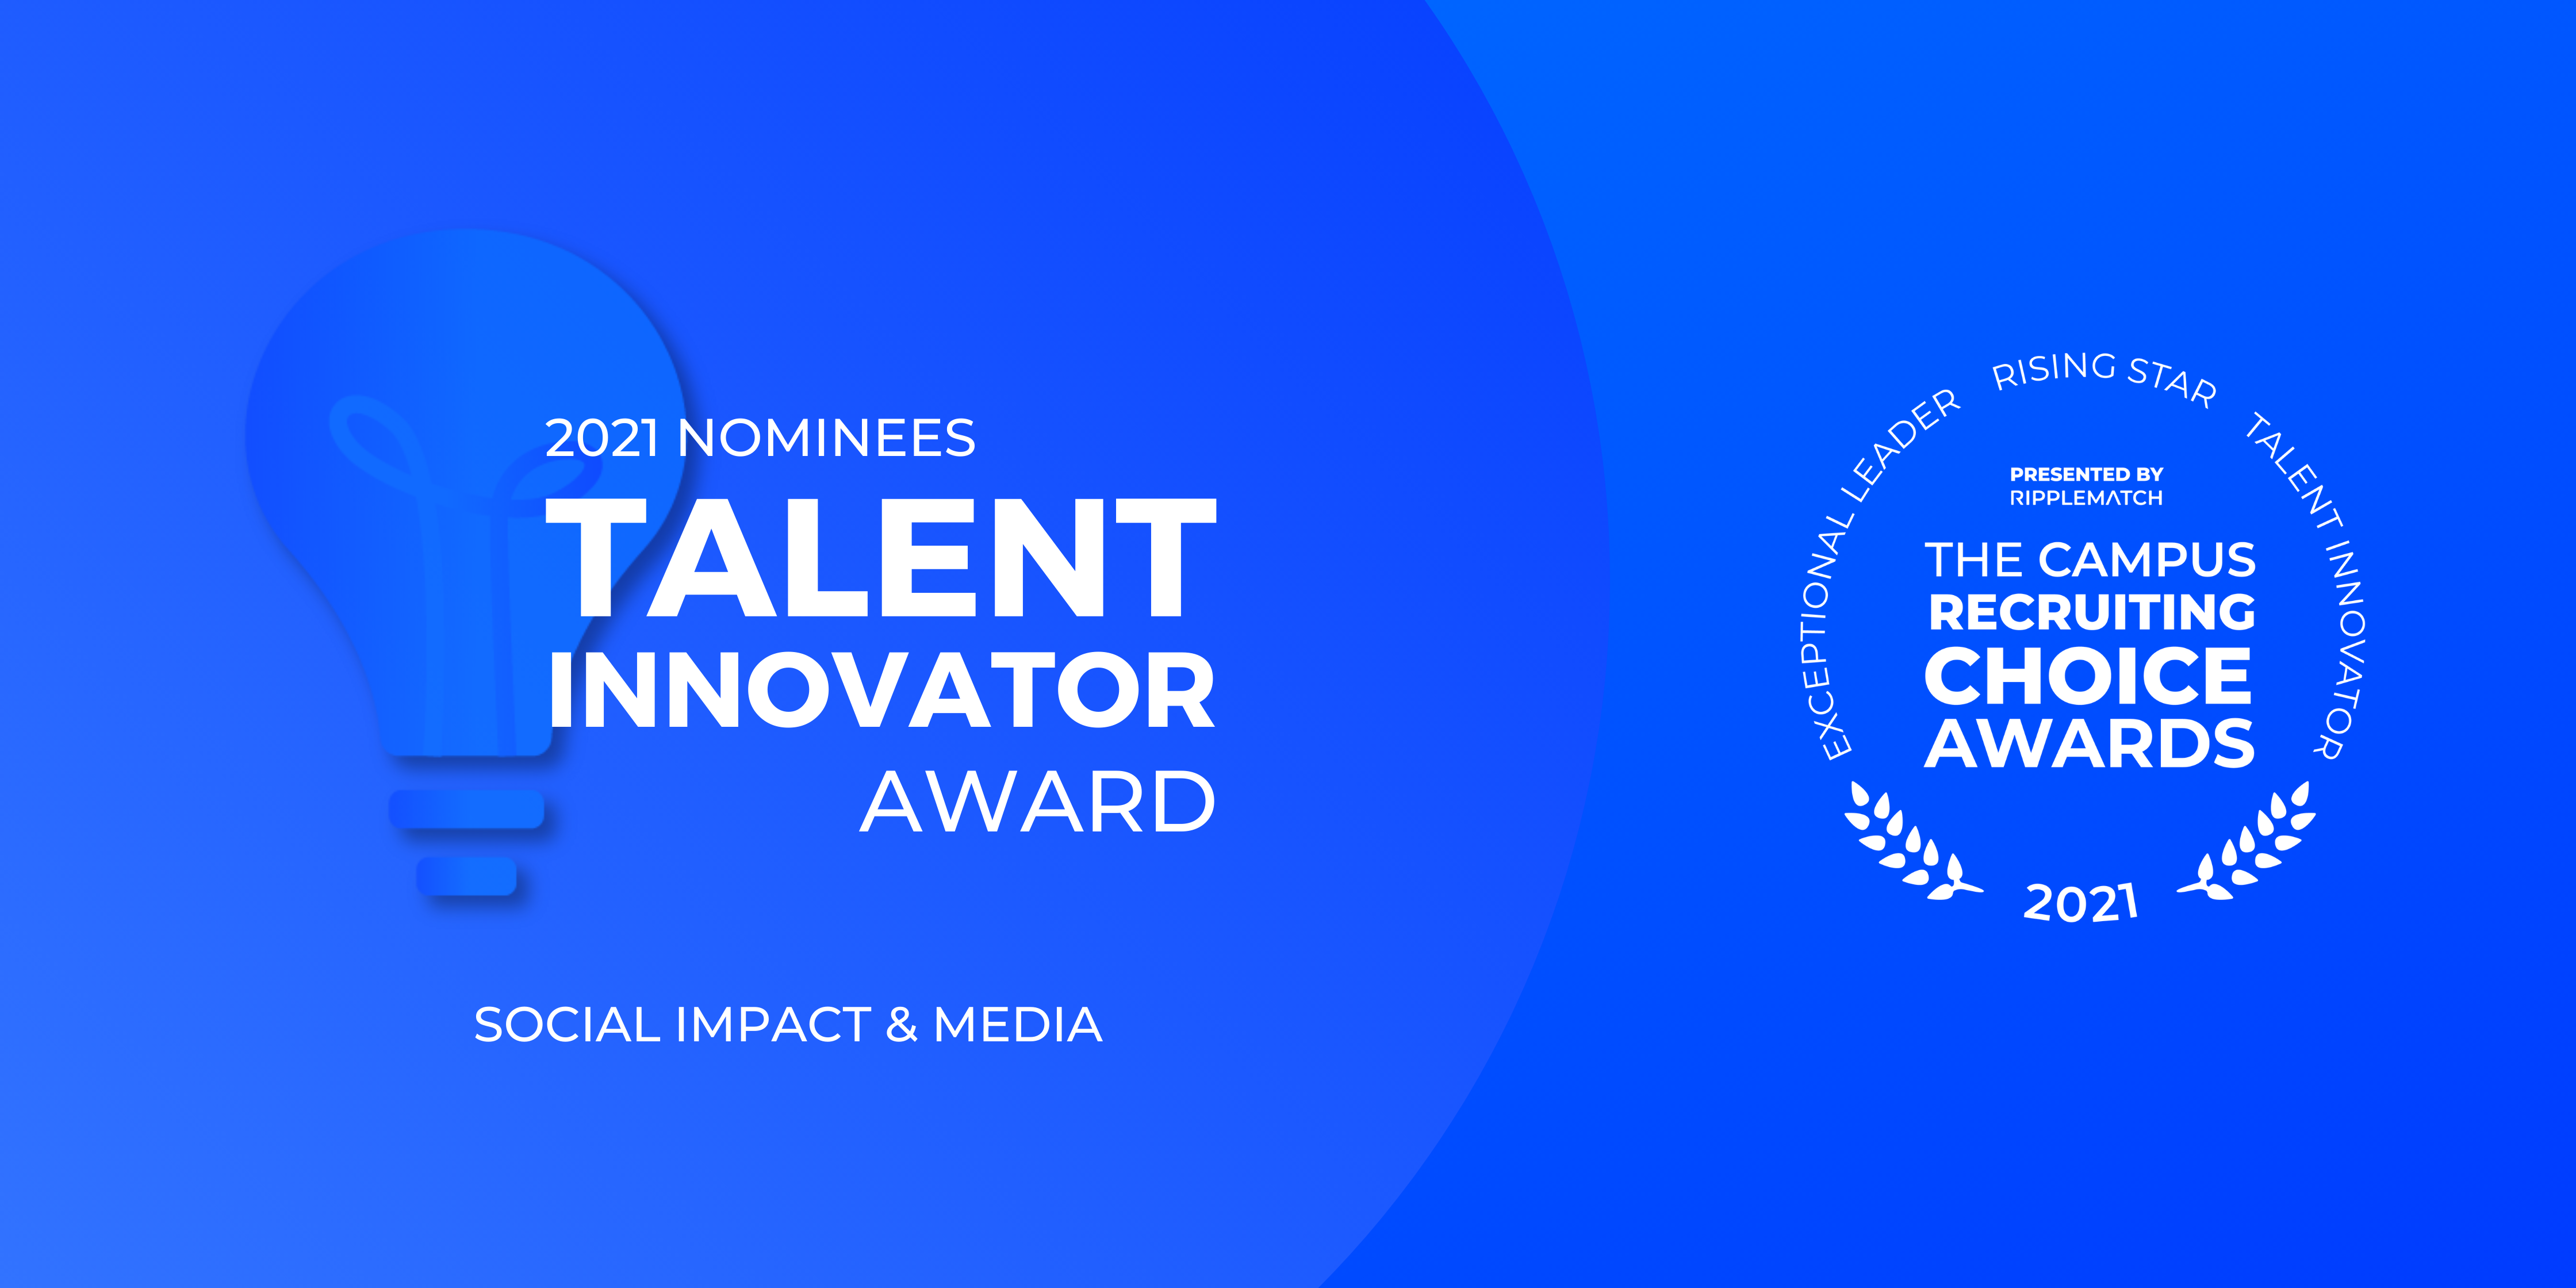 Talent Innovator Award - Social Impact & Media